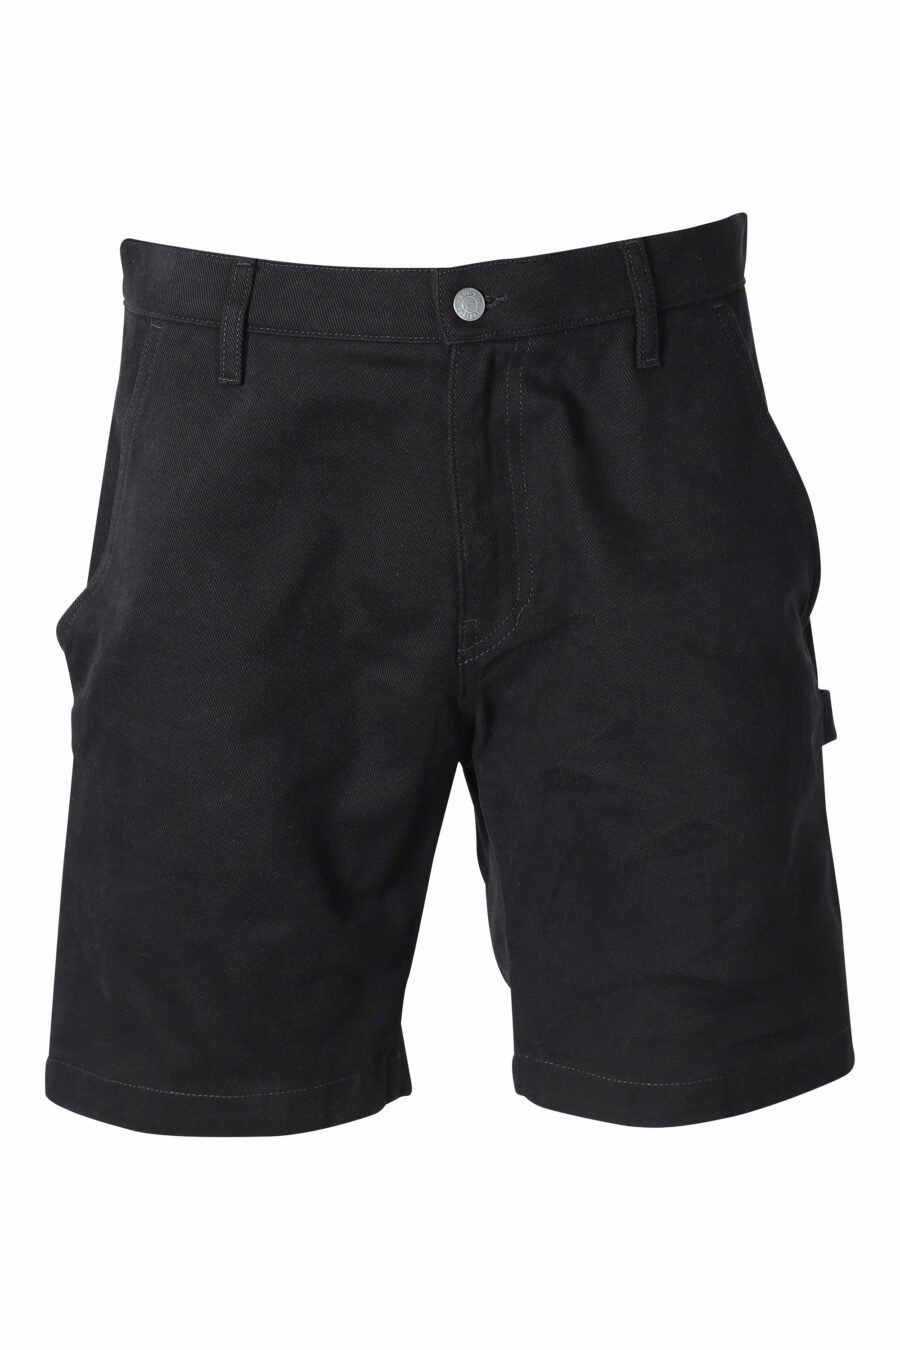 Pantalón vaquero corto negro con bolsillos laterales - IMG 9563